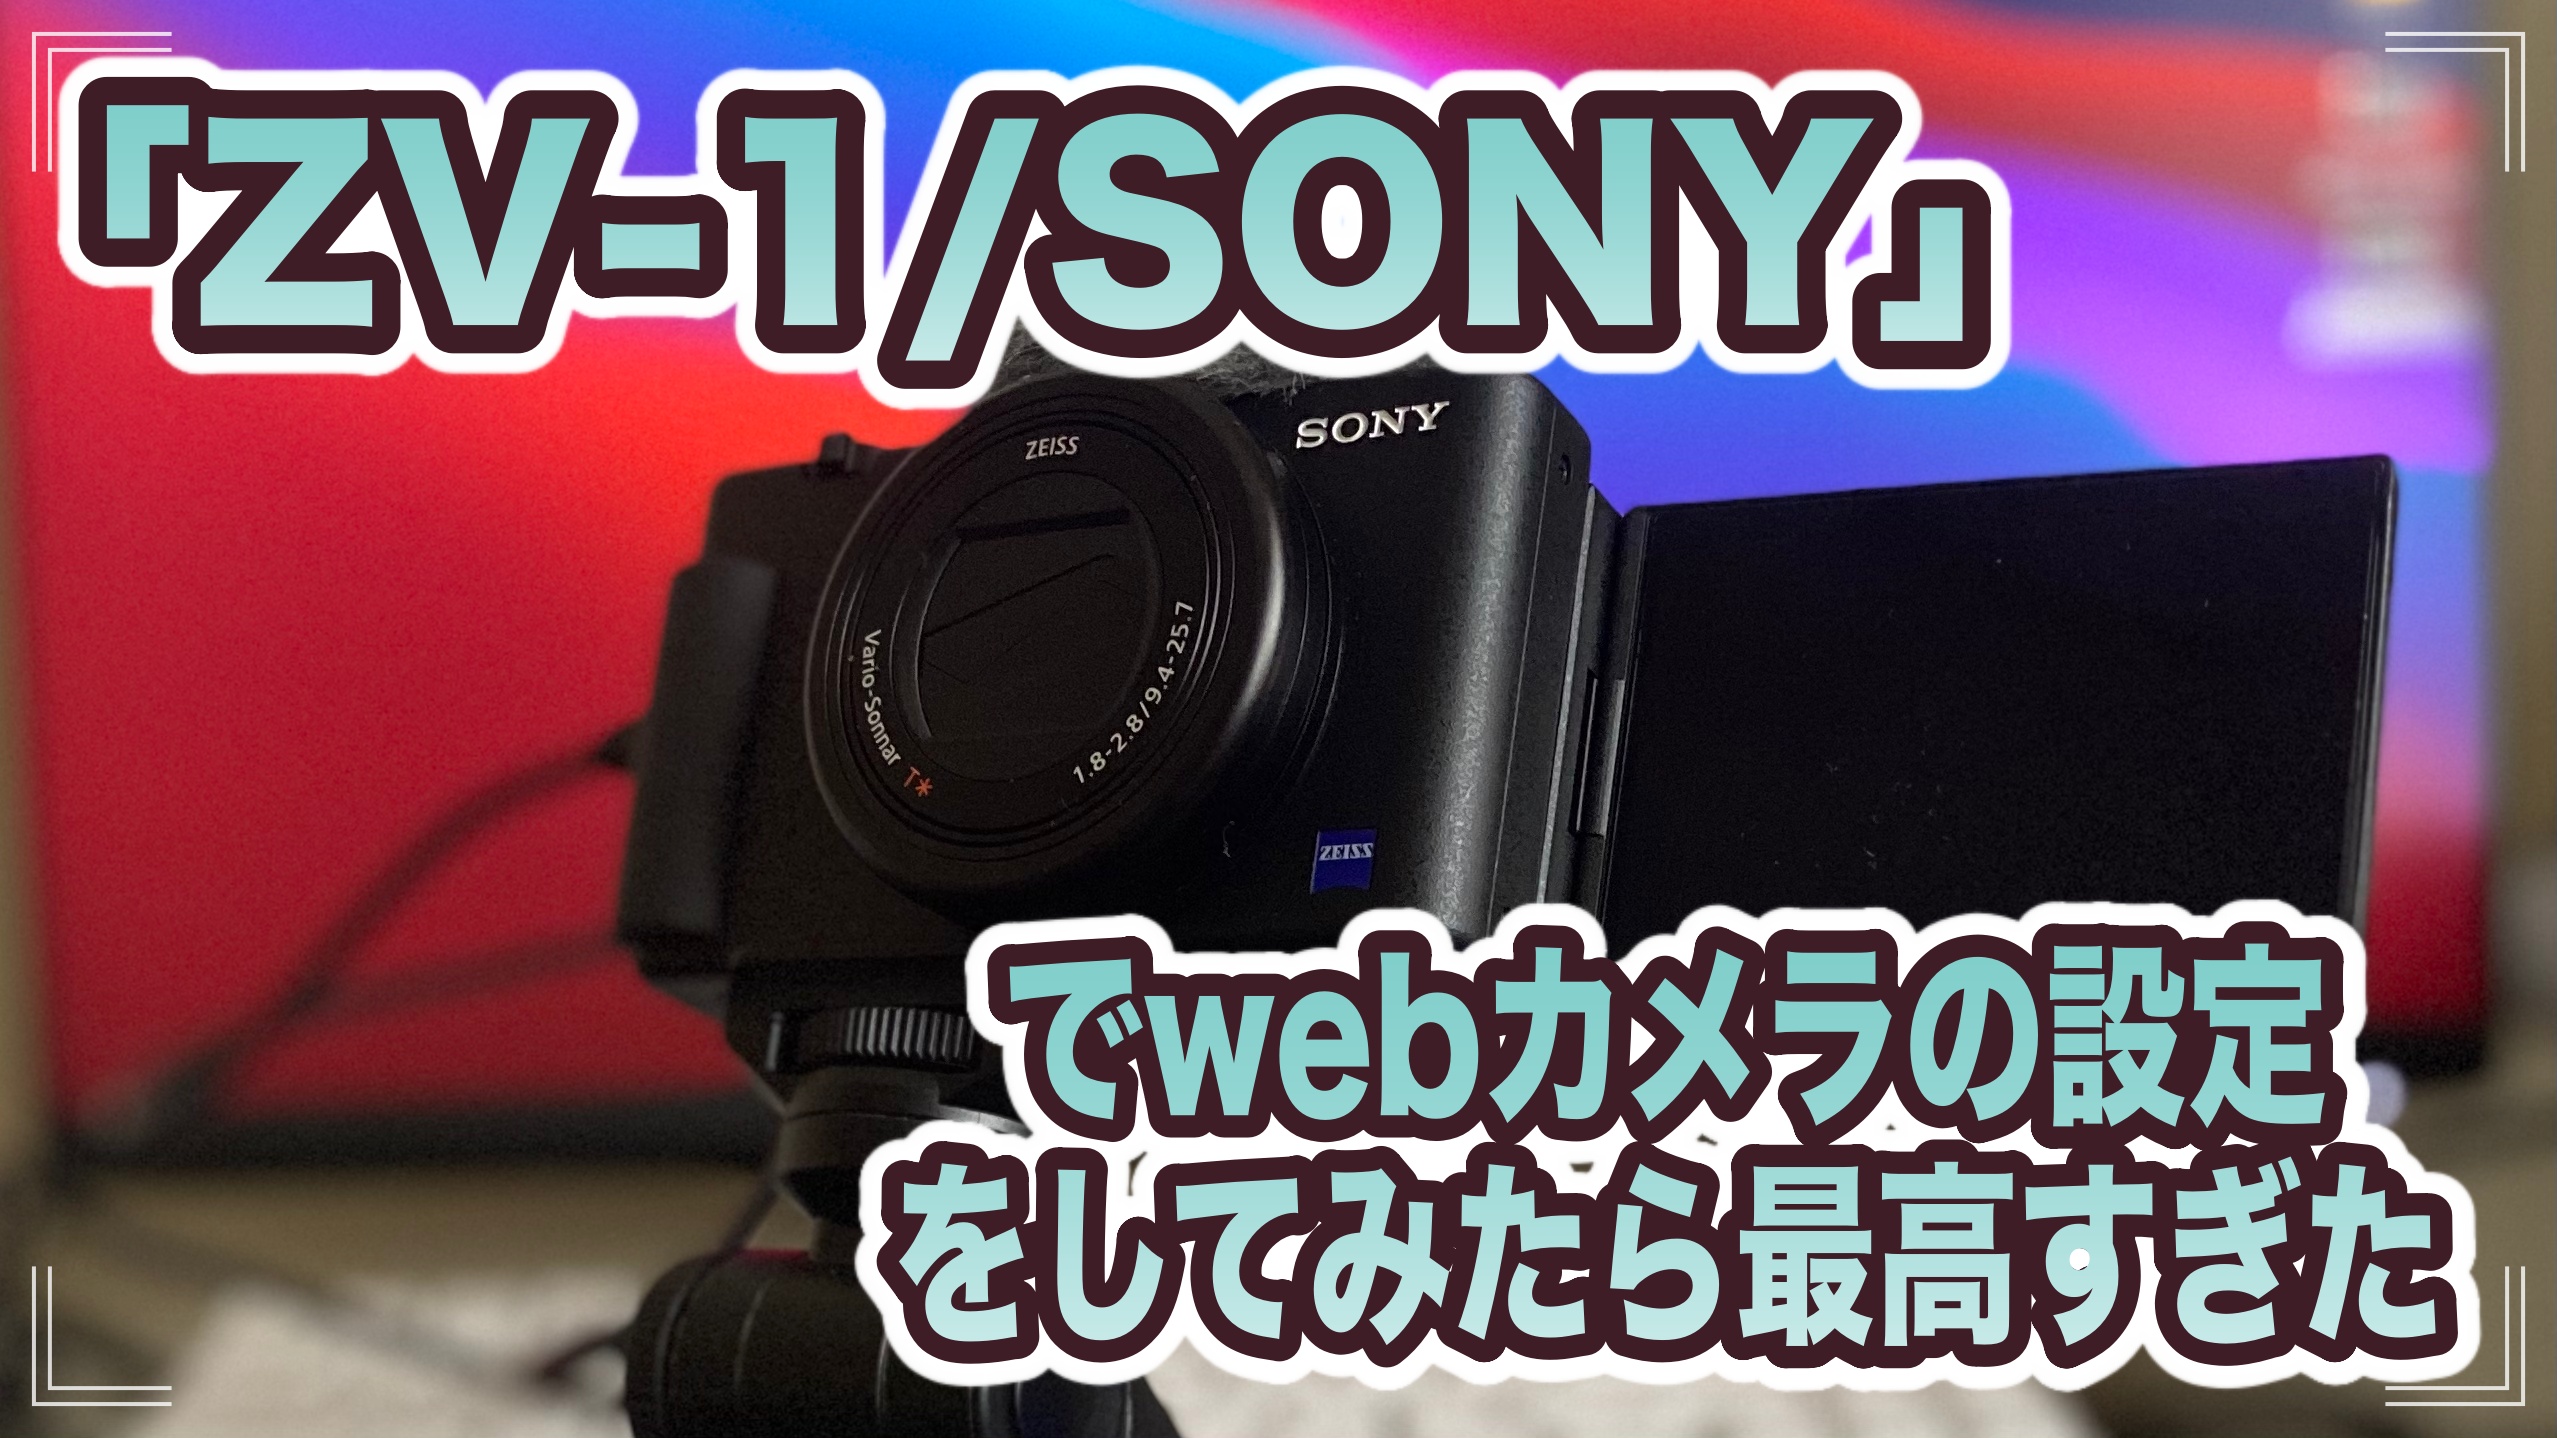 ZV-1/SONY」でwebカメラの設定をしてみたら最高すぎた【解説あり 